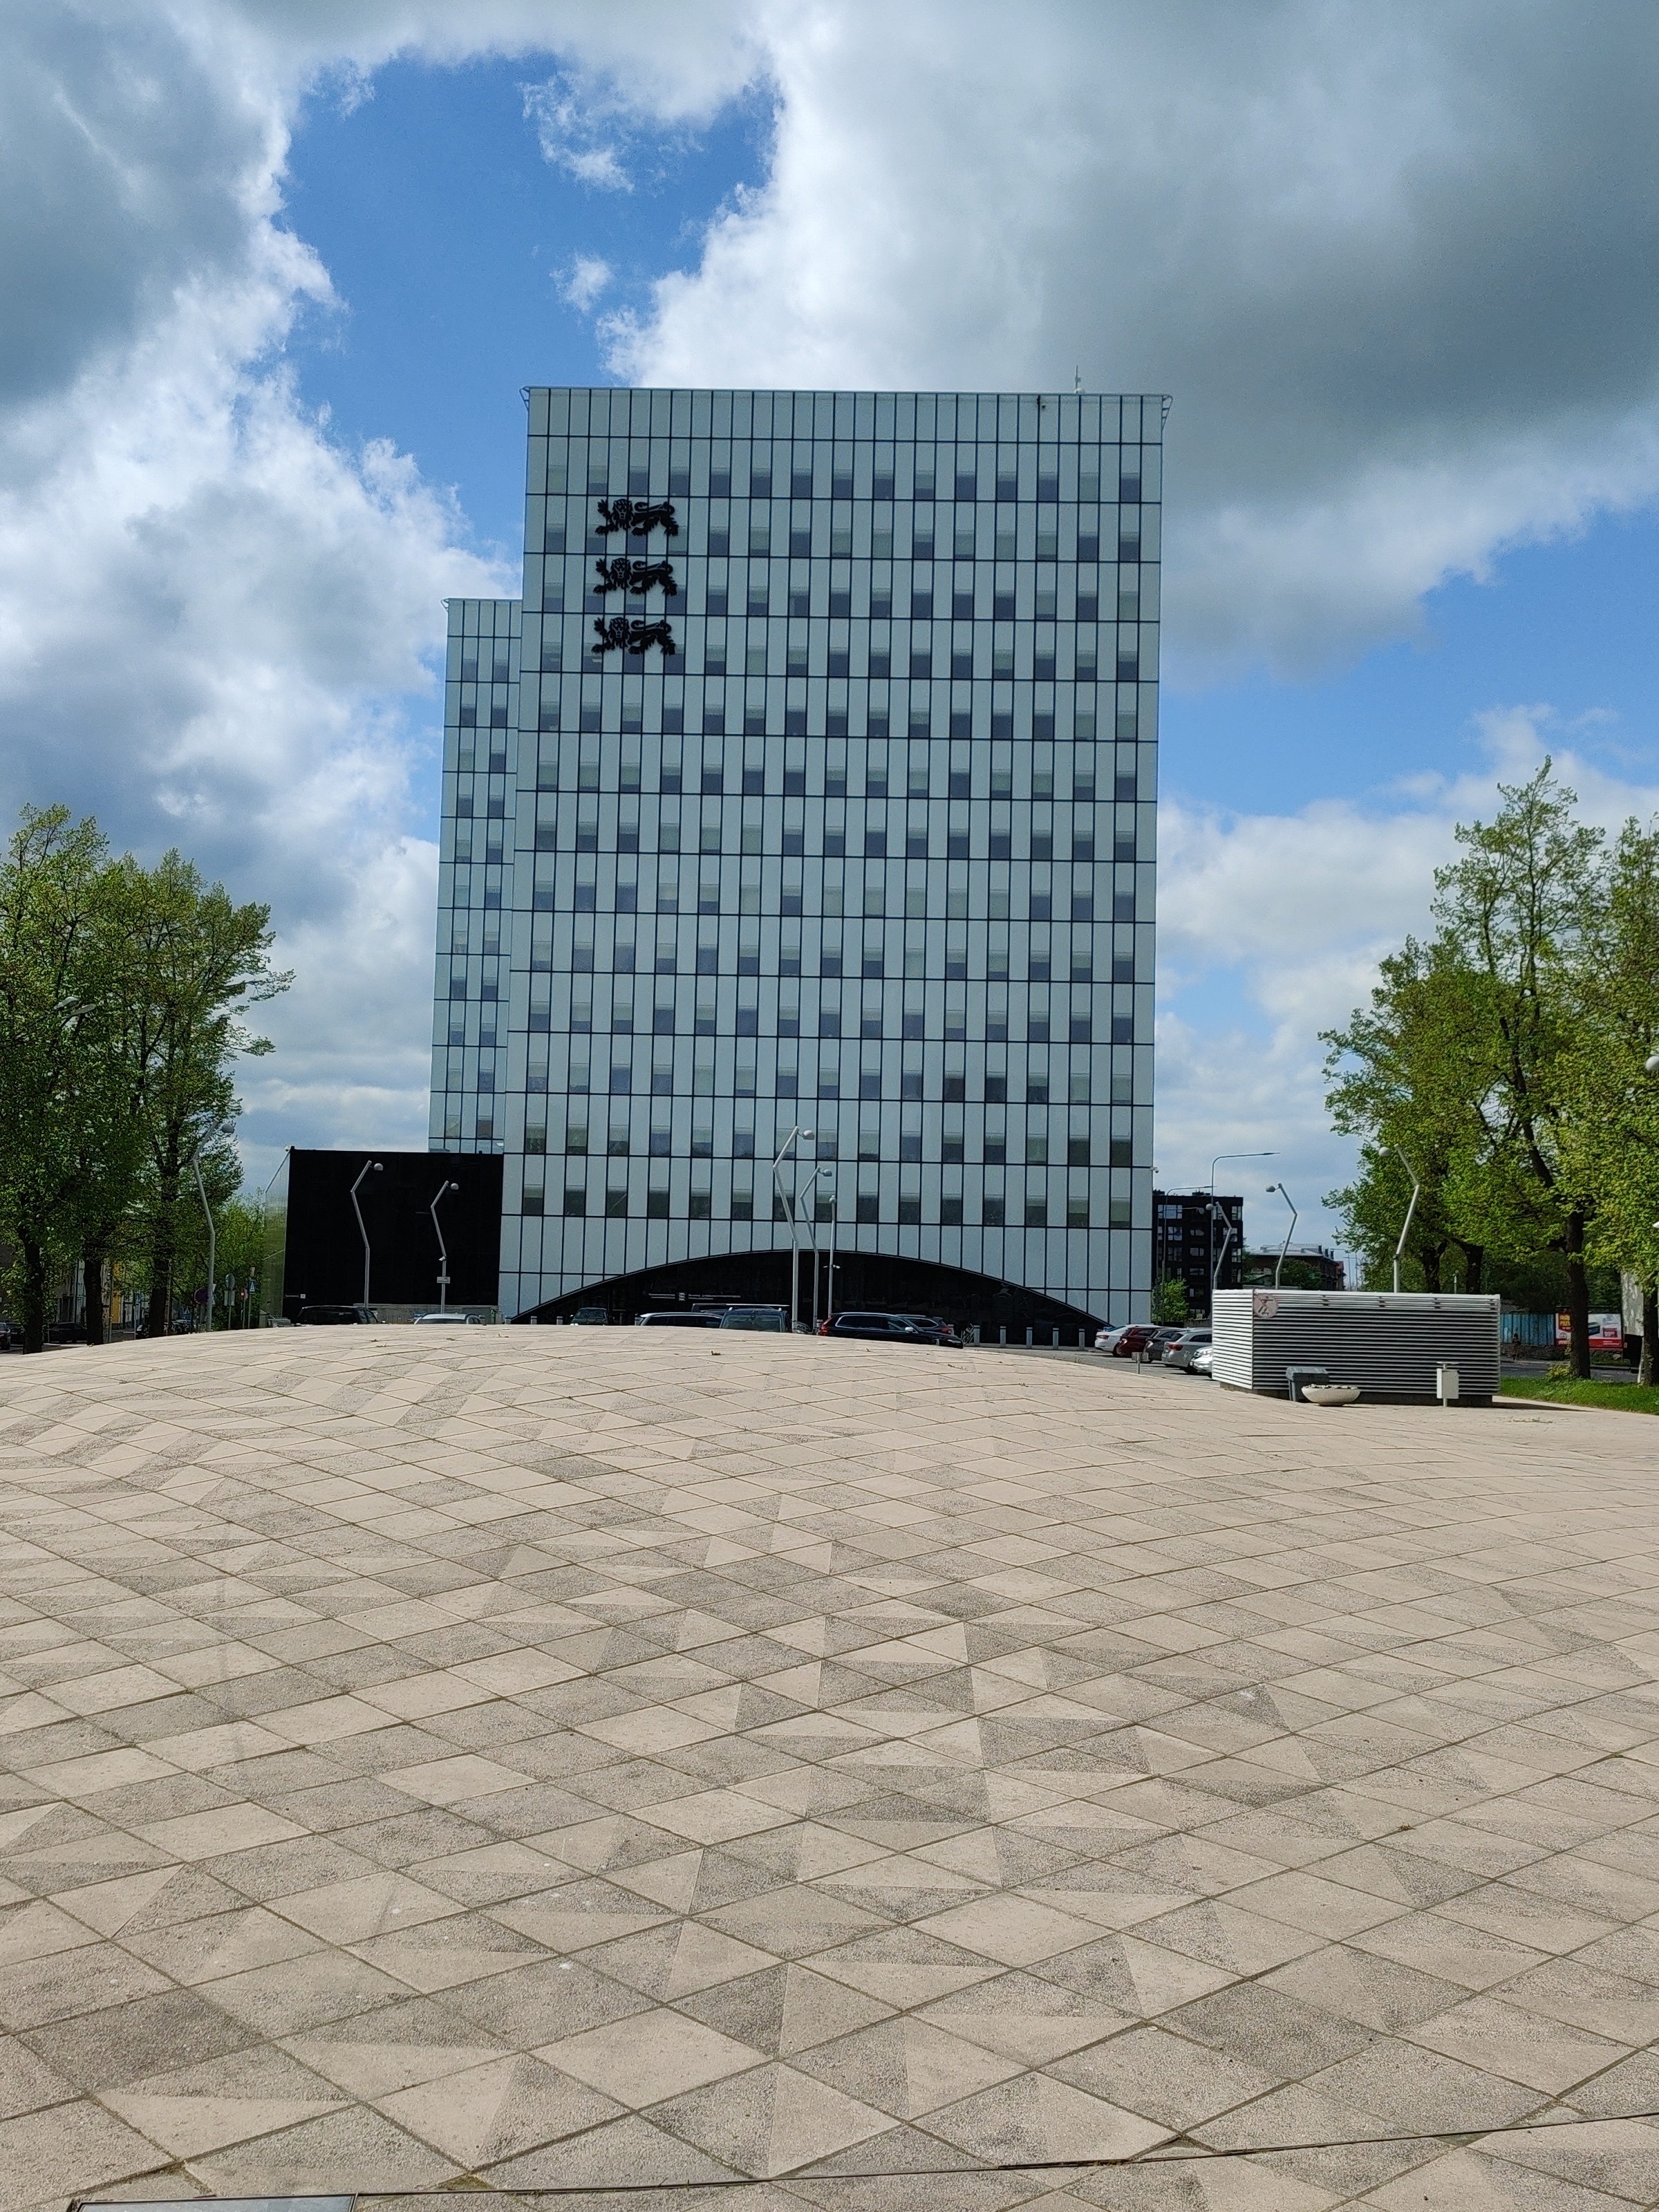 Eesti Vabariigi Rahandusministeeriumi hoone Tallinnas rephoto